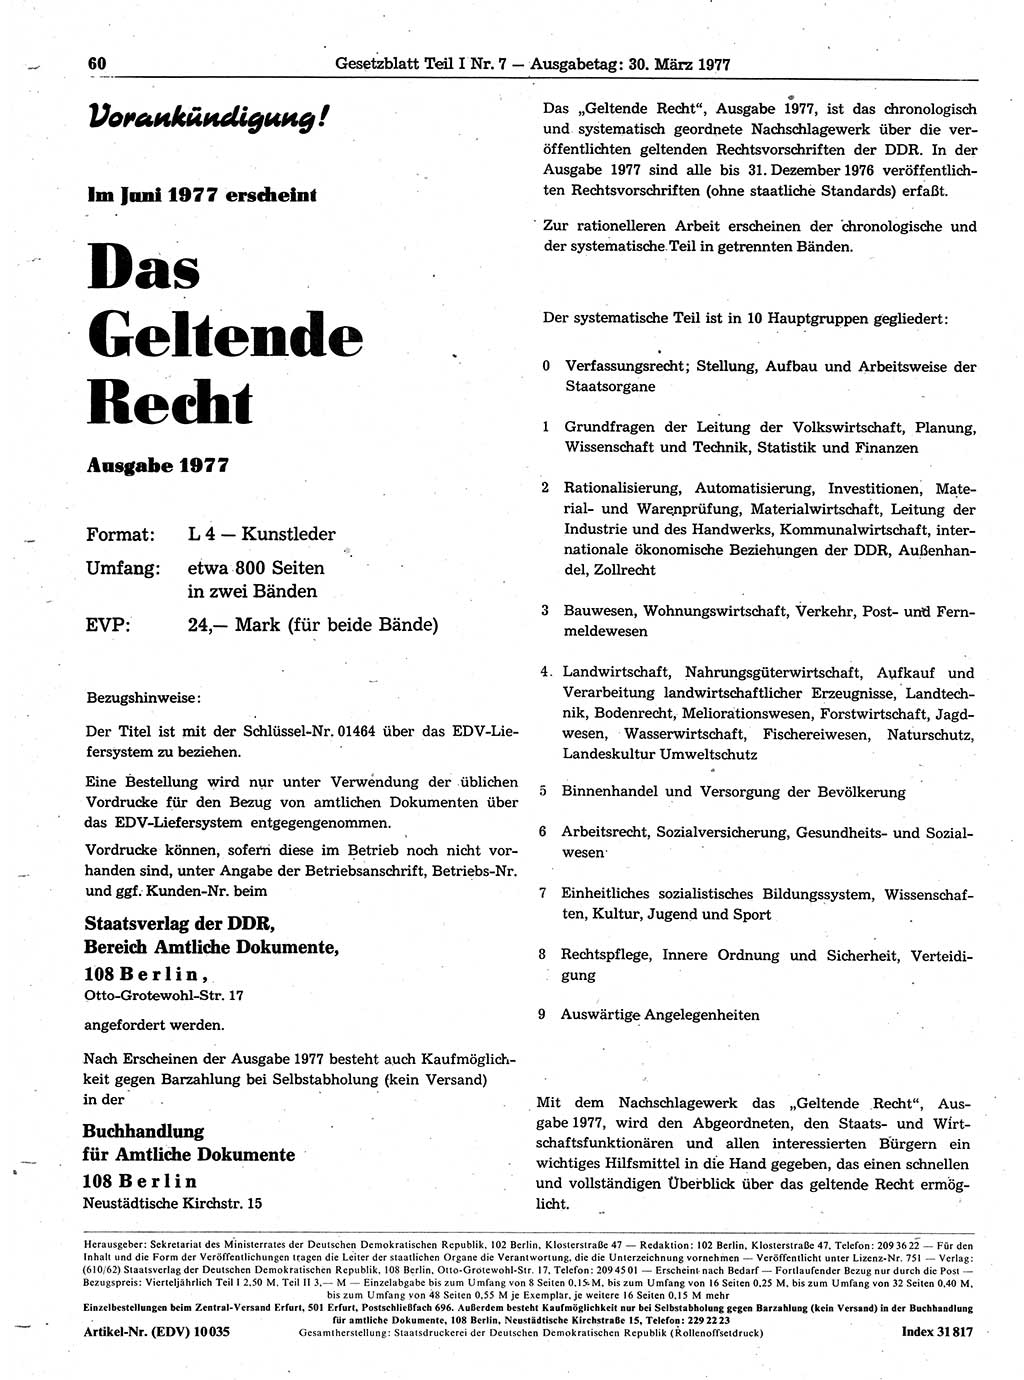 Gesetzblatt (GBl.) der Deutschen Demokratischen Republik (DDR) Teil Ⅰ 1977, Seite 60 (GBl. DDR Ⅰ 1977, S. 60)